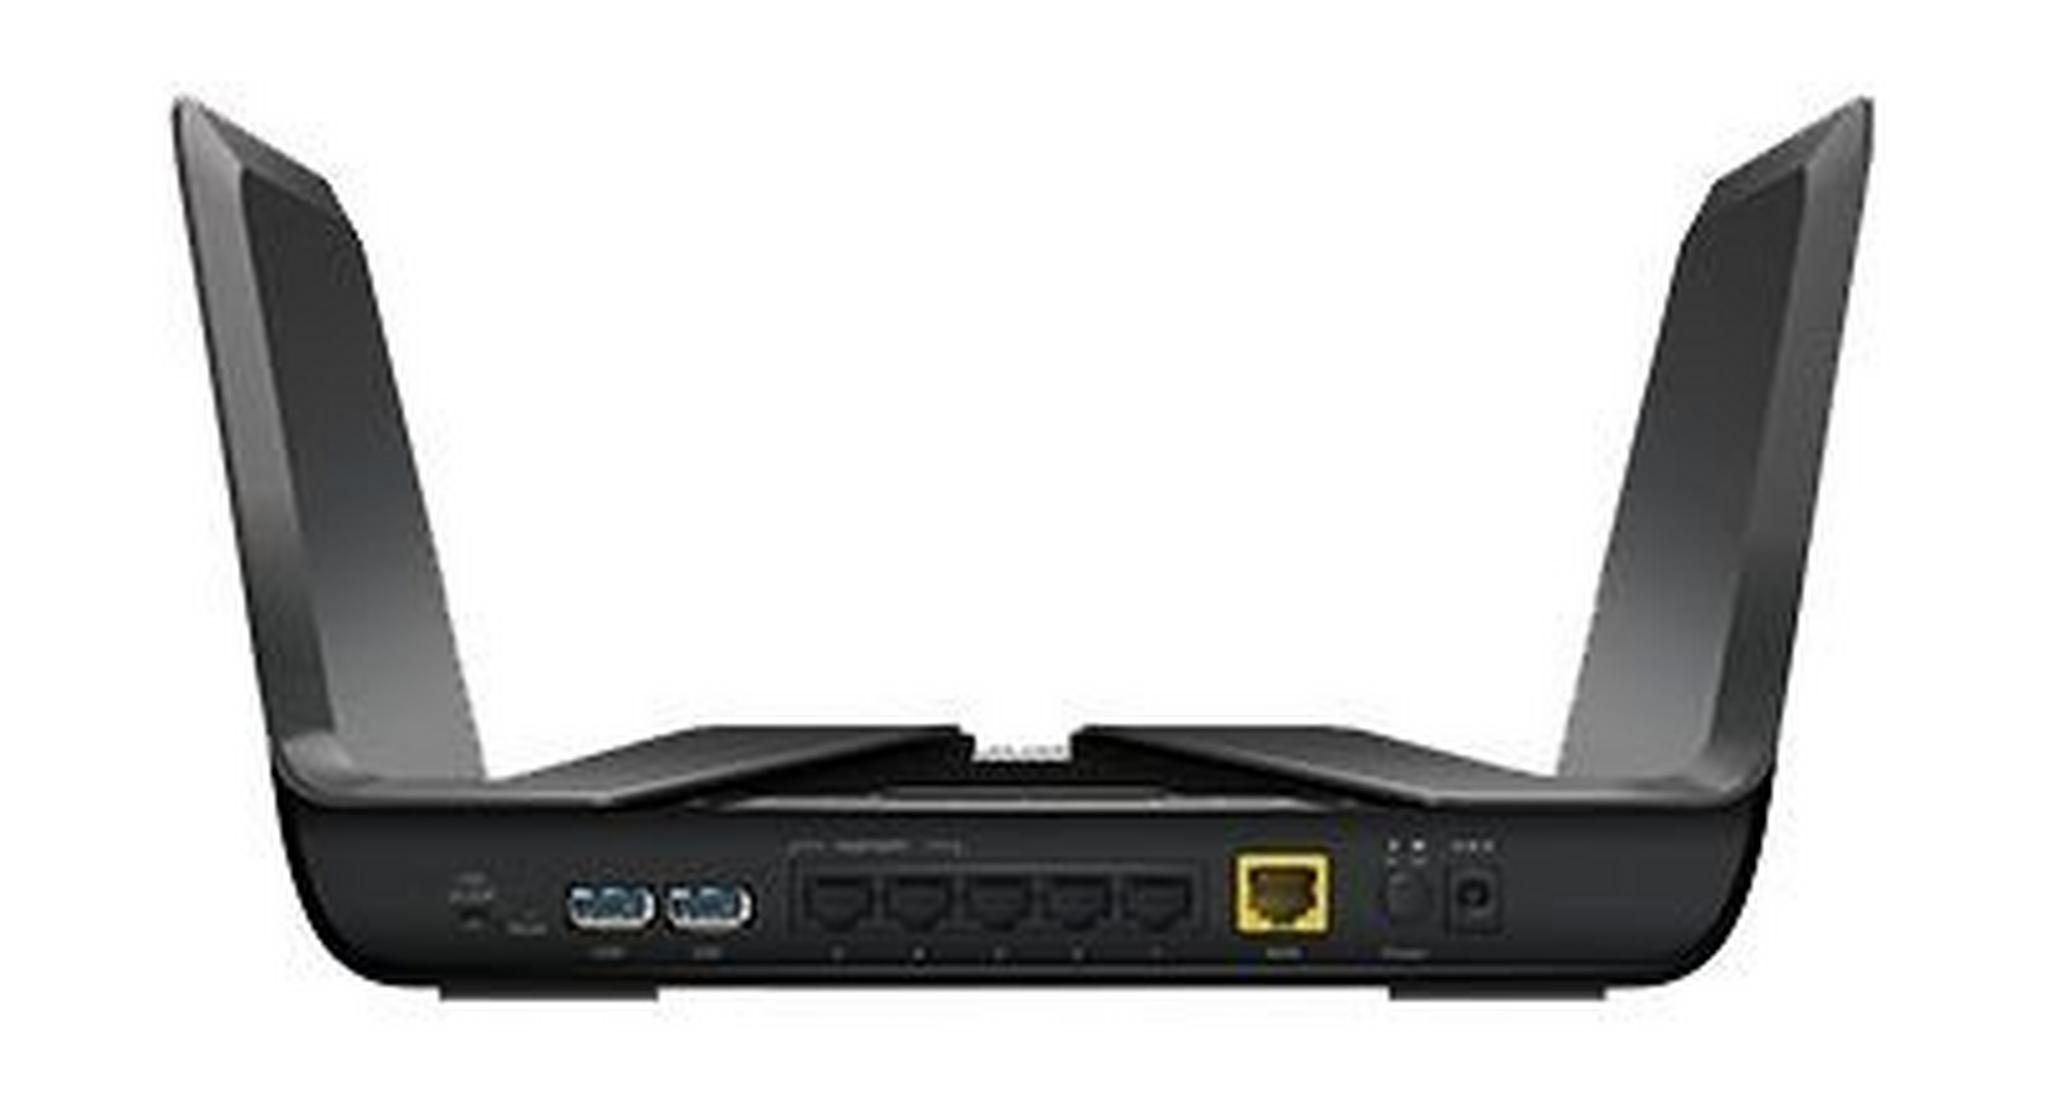 Nighthawk AX8 8-Stream Wi-Fi-6 Router (RAX80)